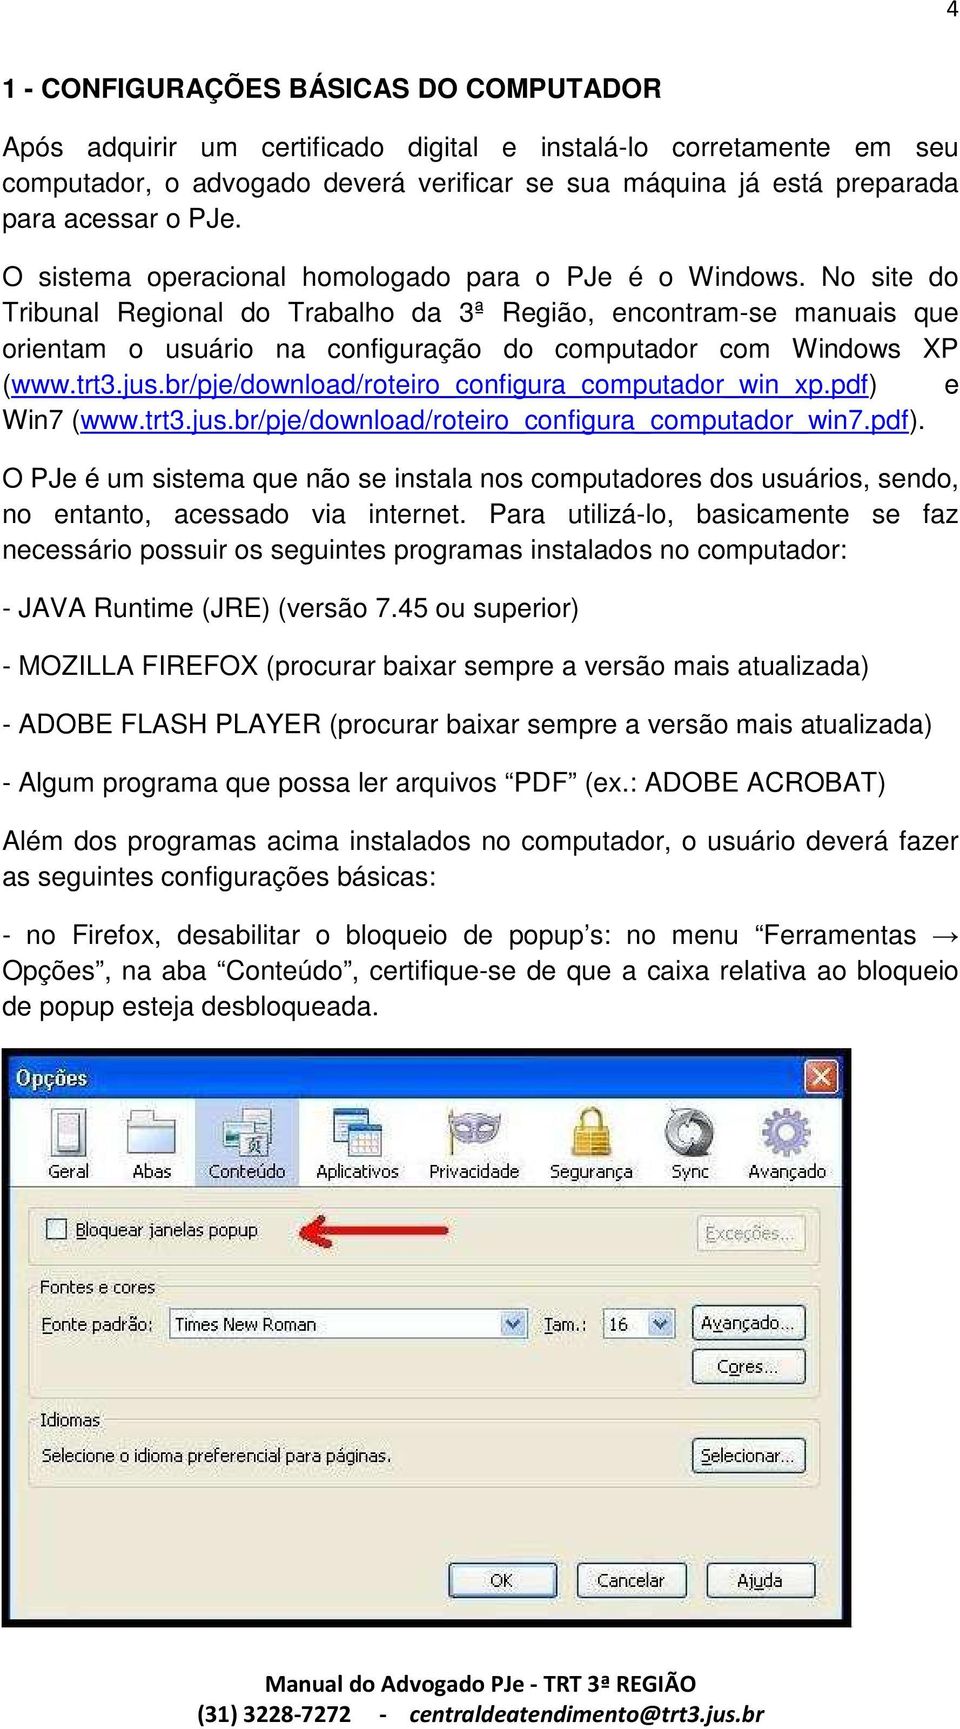 No site do Tribunal Regional do Trabalho da 3ª Região, encontram-se manuais que orientam o usuário na configuração do computador com Windows XP (www.trt3.jus.